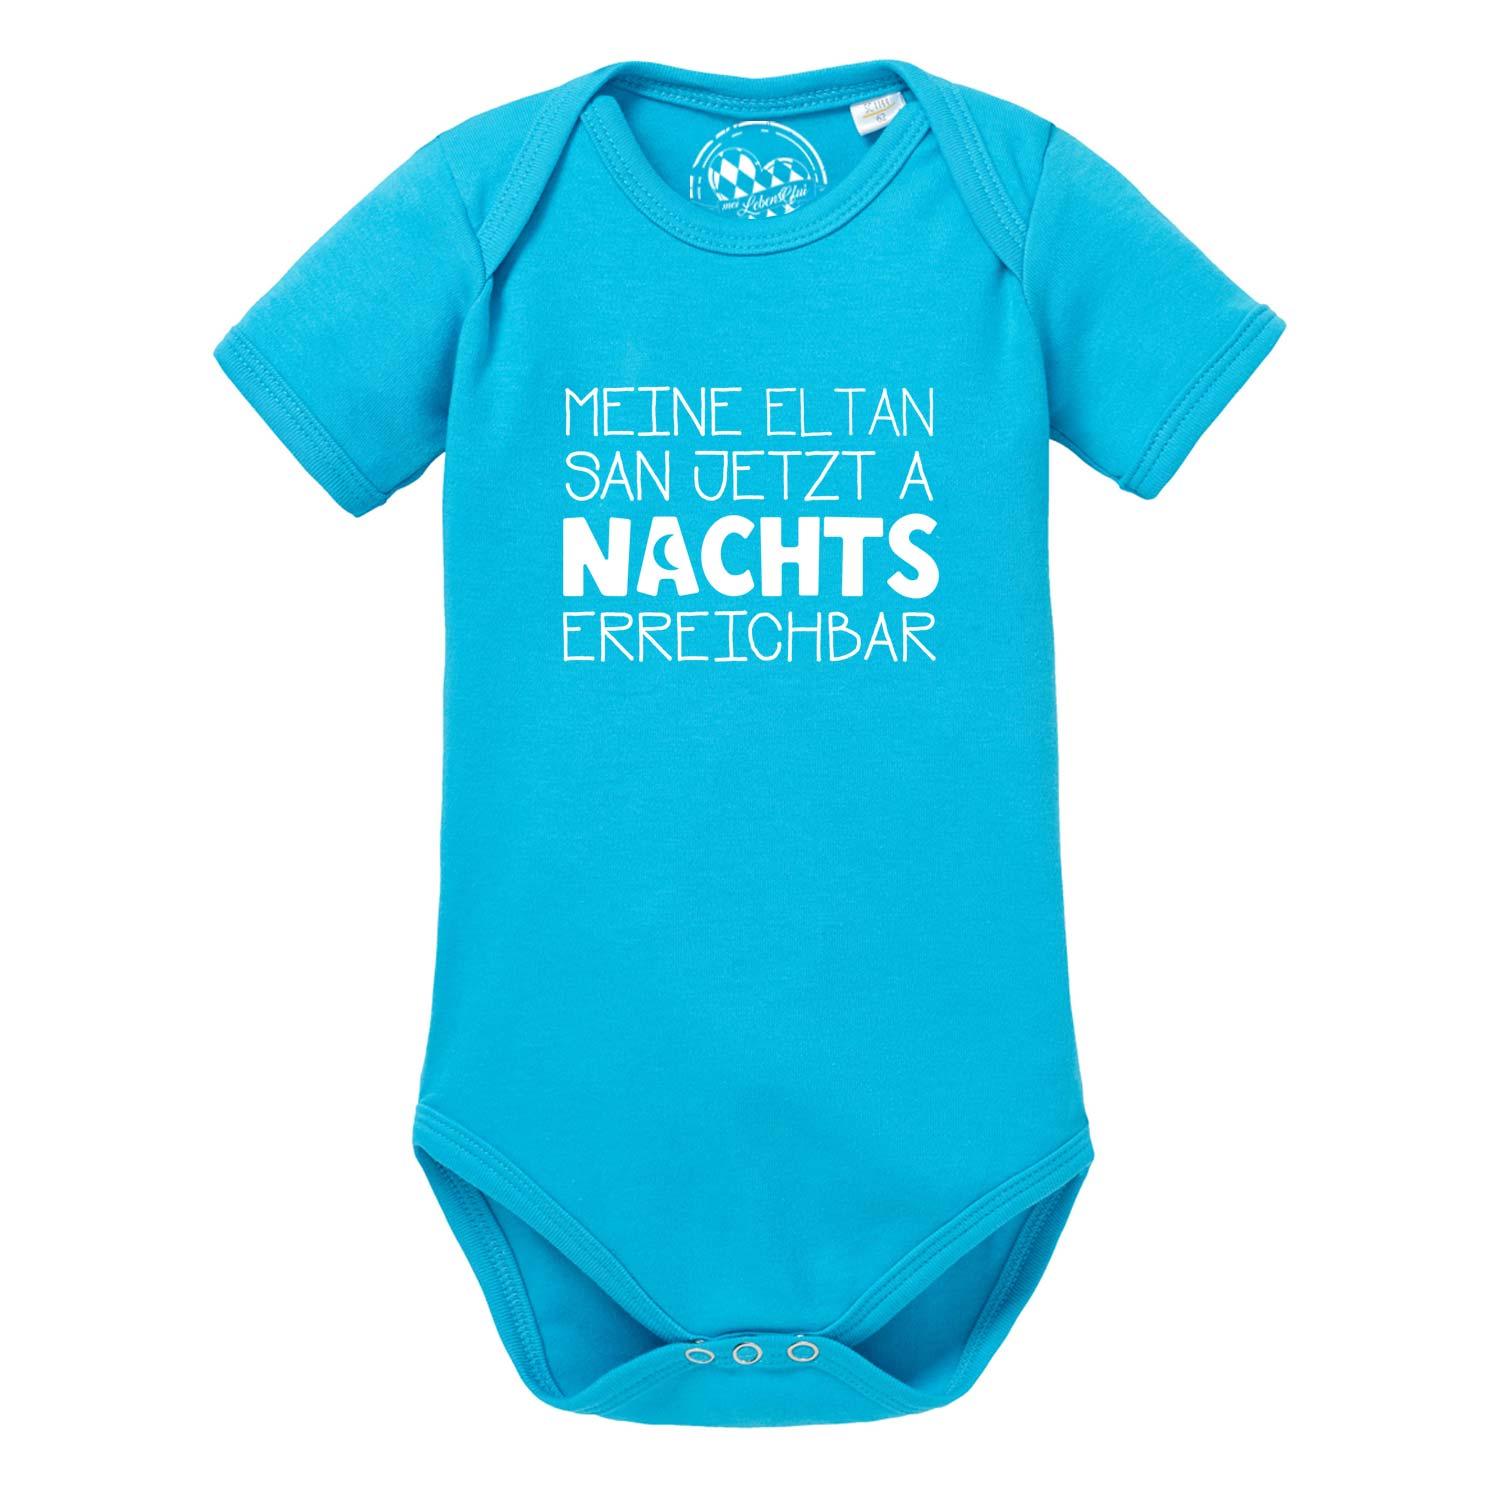 Baby Body "Nachts erreichbar!" - bavariashop - mei LebensGfui